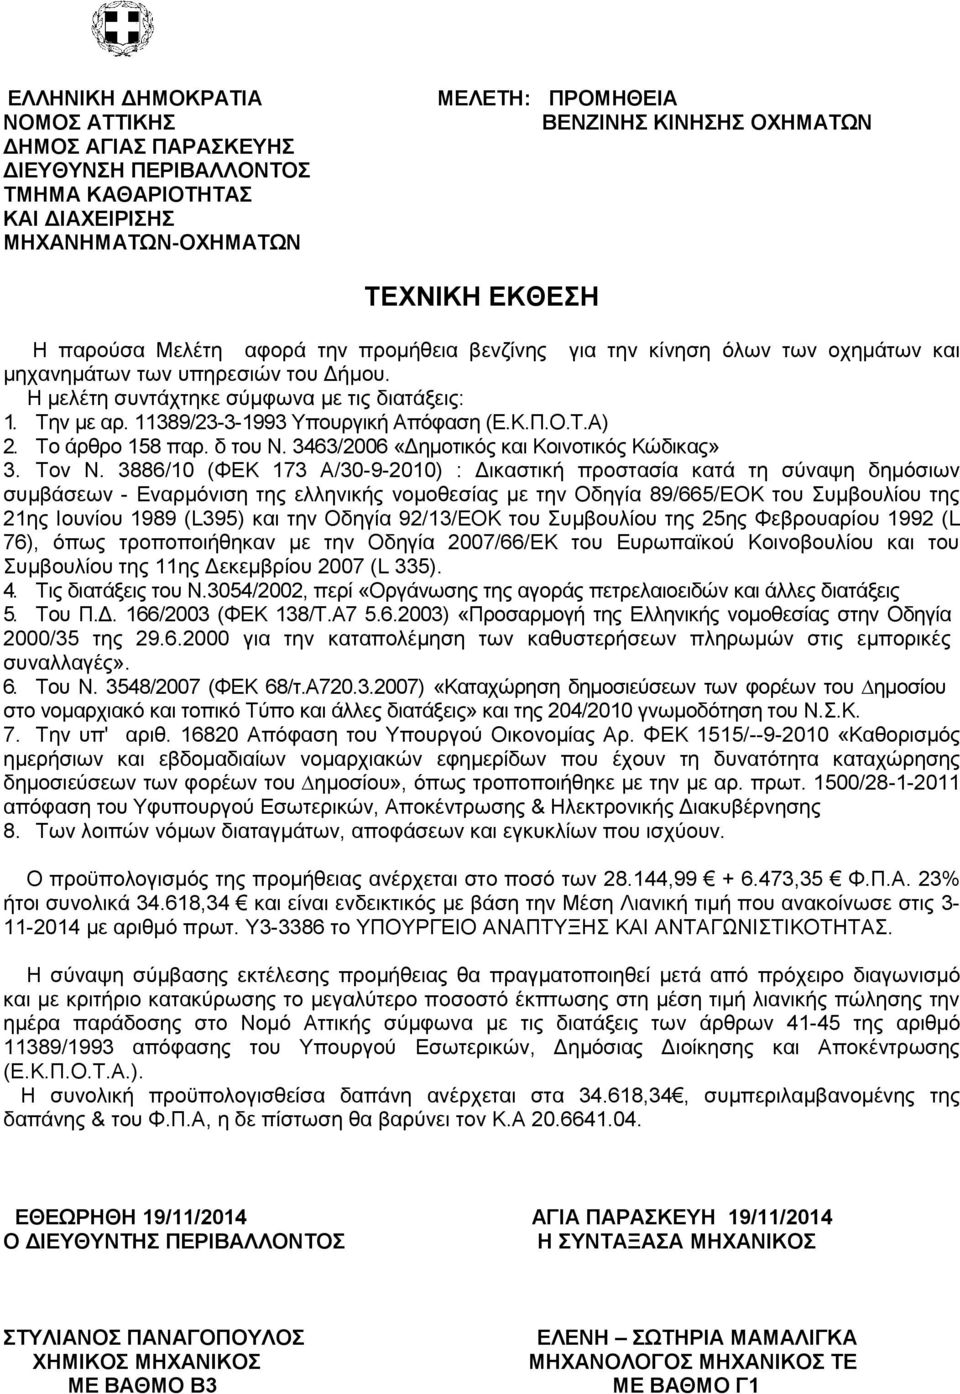 3886/10 (ΦΕΚ 173 Α/30-9-2010) : Δικαστική προστασία κατά τη σύναψη δημόσιων συμβάσεων - Εναρμόνιση της ελληνικής νομοθεσίας με την Οδηγία 89/665/ΕΟΚ του Συμβουλίου της 21ης Ιουνίου 1989 (L395) και